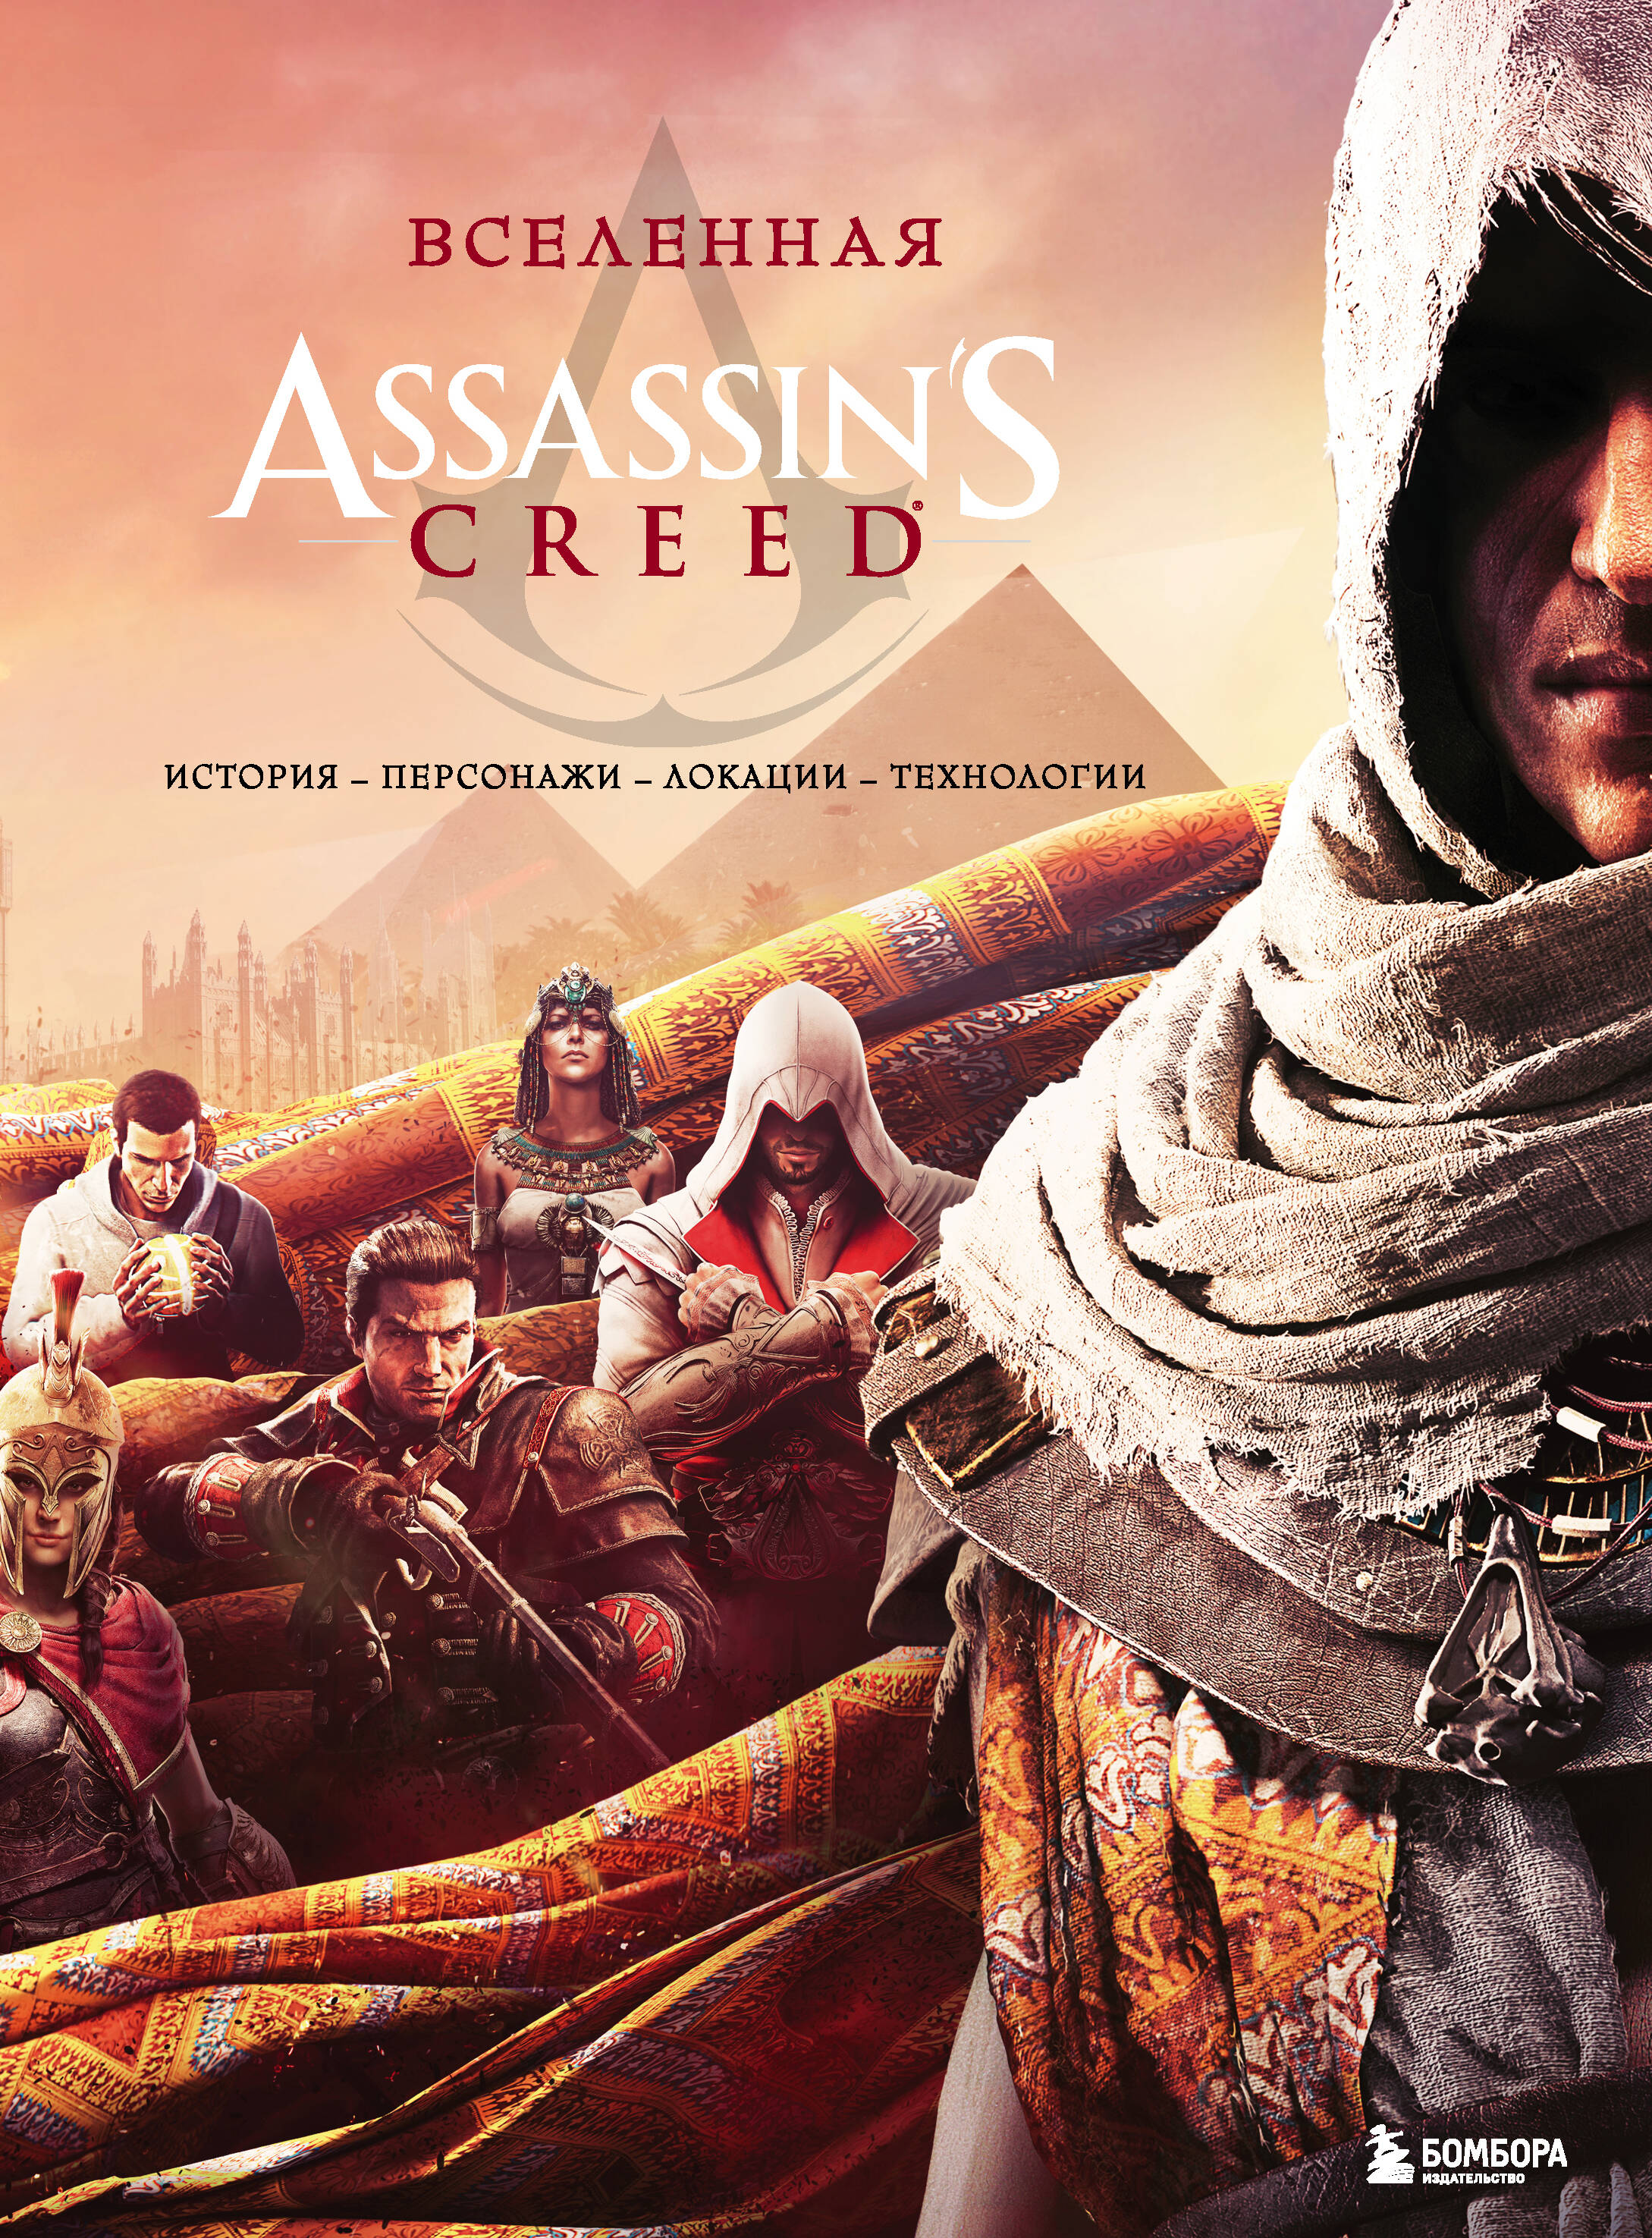 Вселенная Assassins Creed: история, персонажи, локации, технологии assassins creed syndicate standard edition